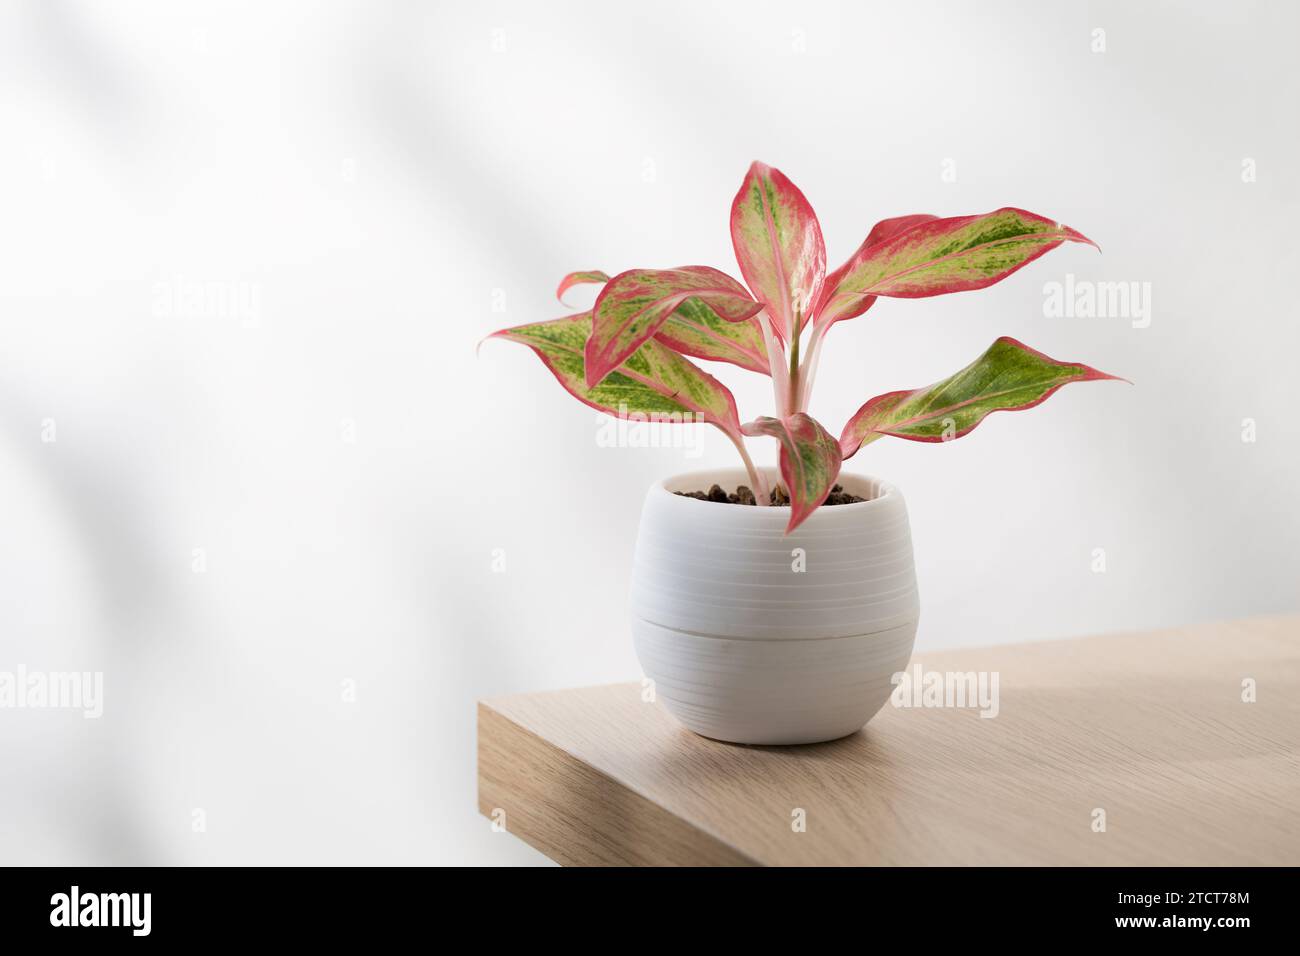 Small red aglaonema chinese evergreen (Aglaonema creta) in white plastic pot. Stock Photo